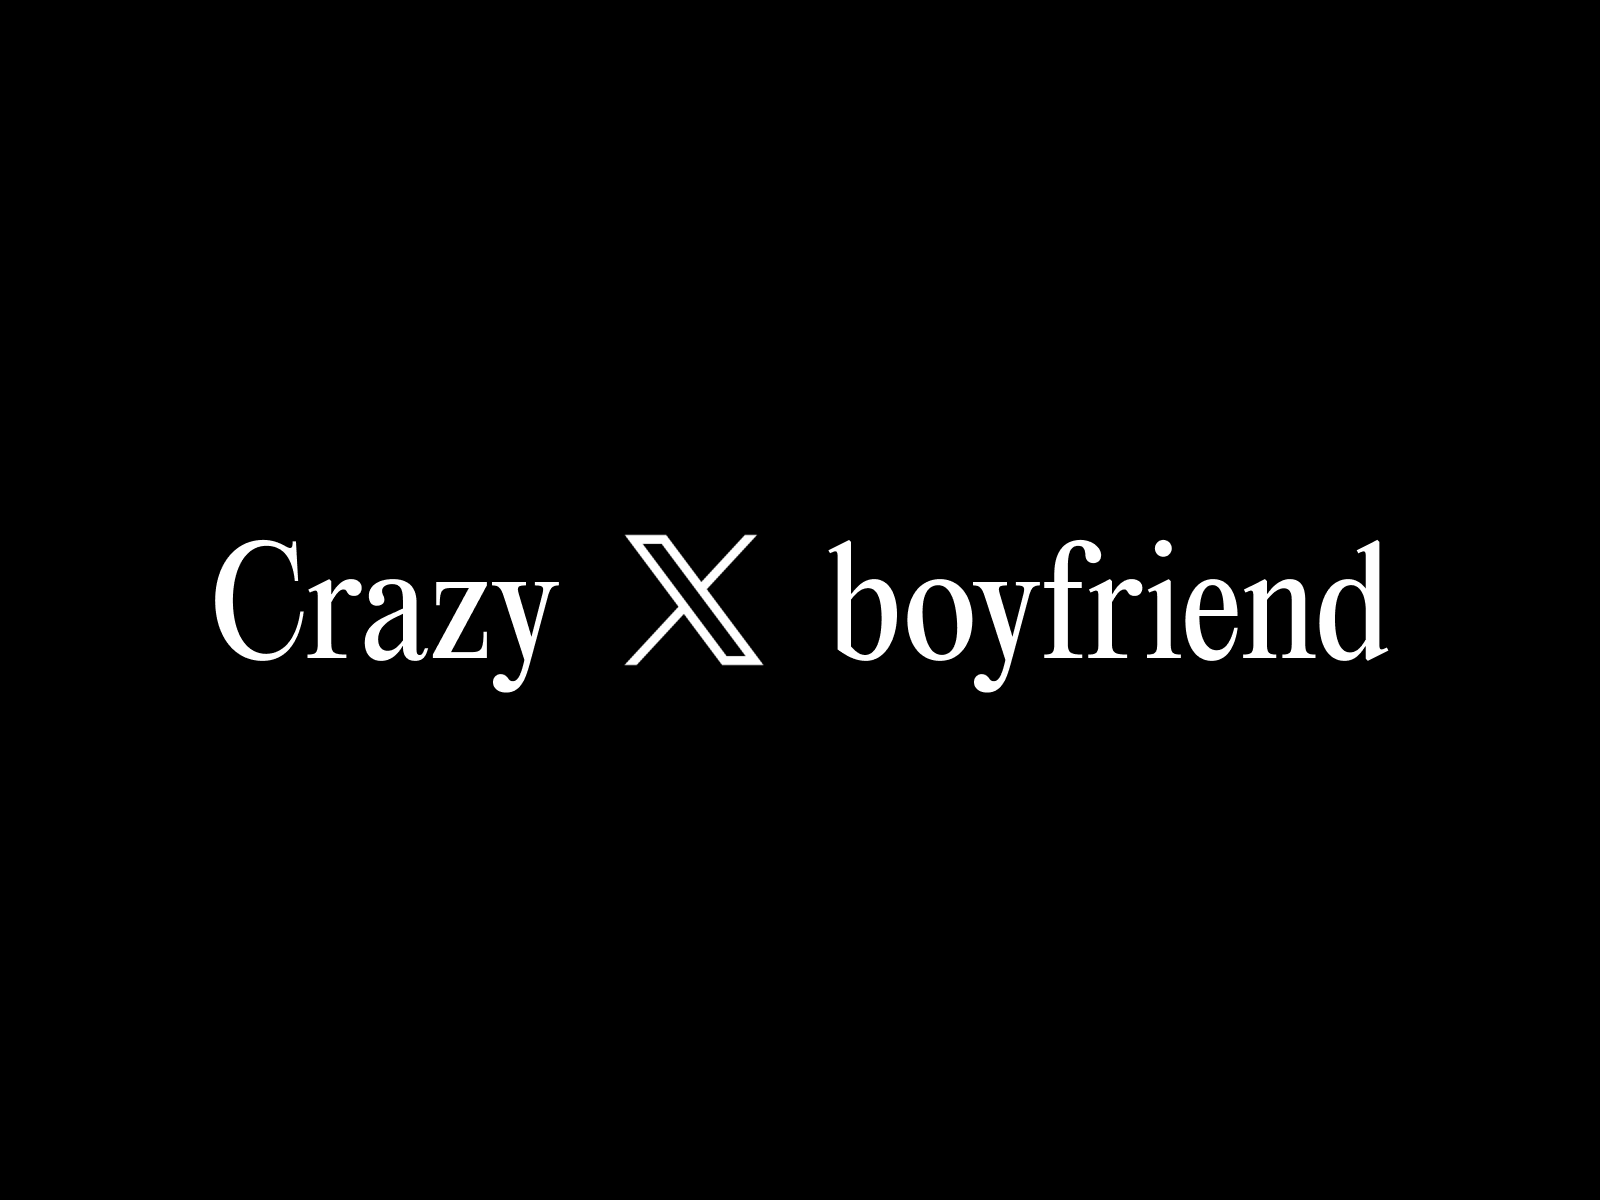 Crazy x boyfriend